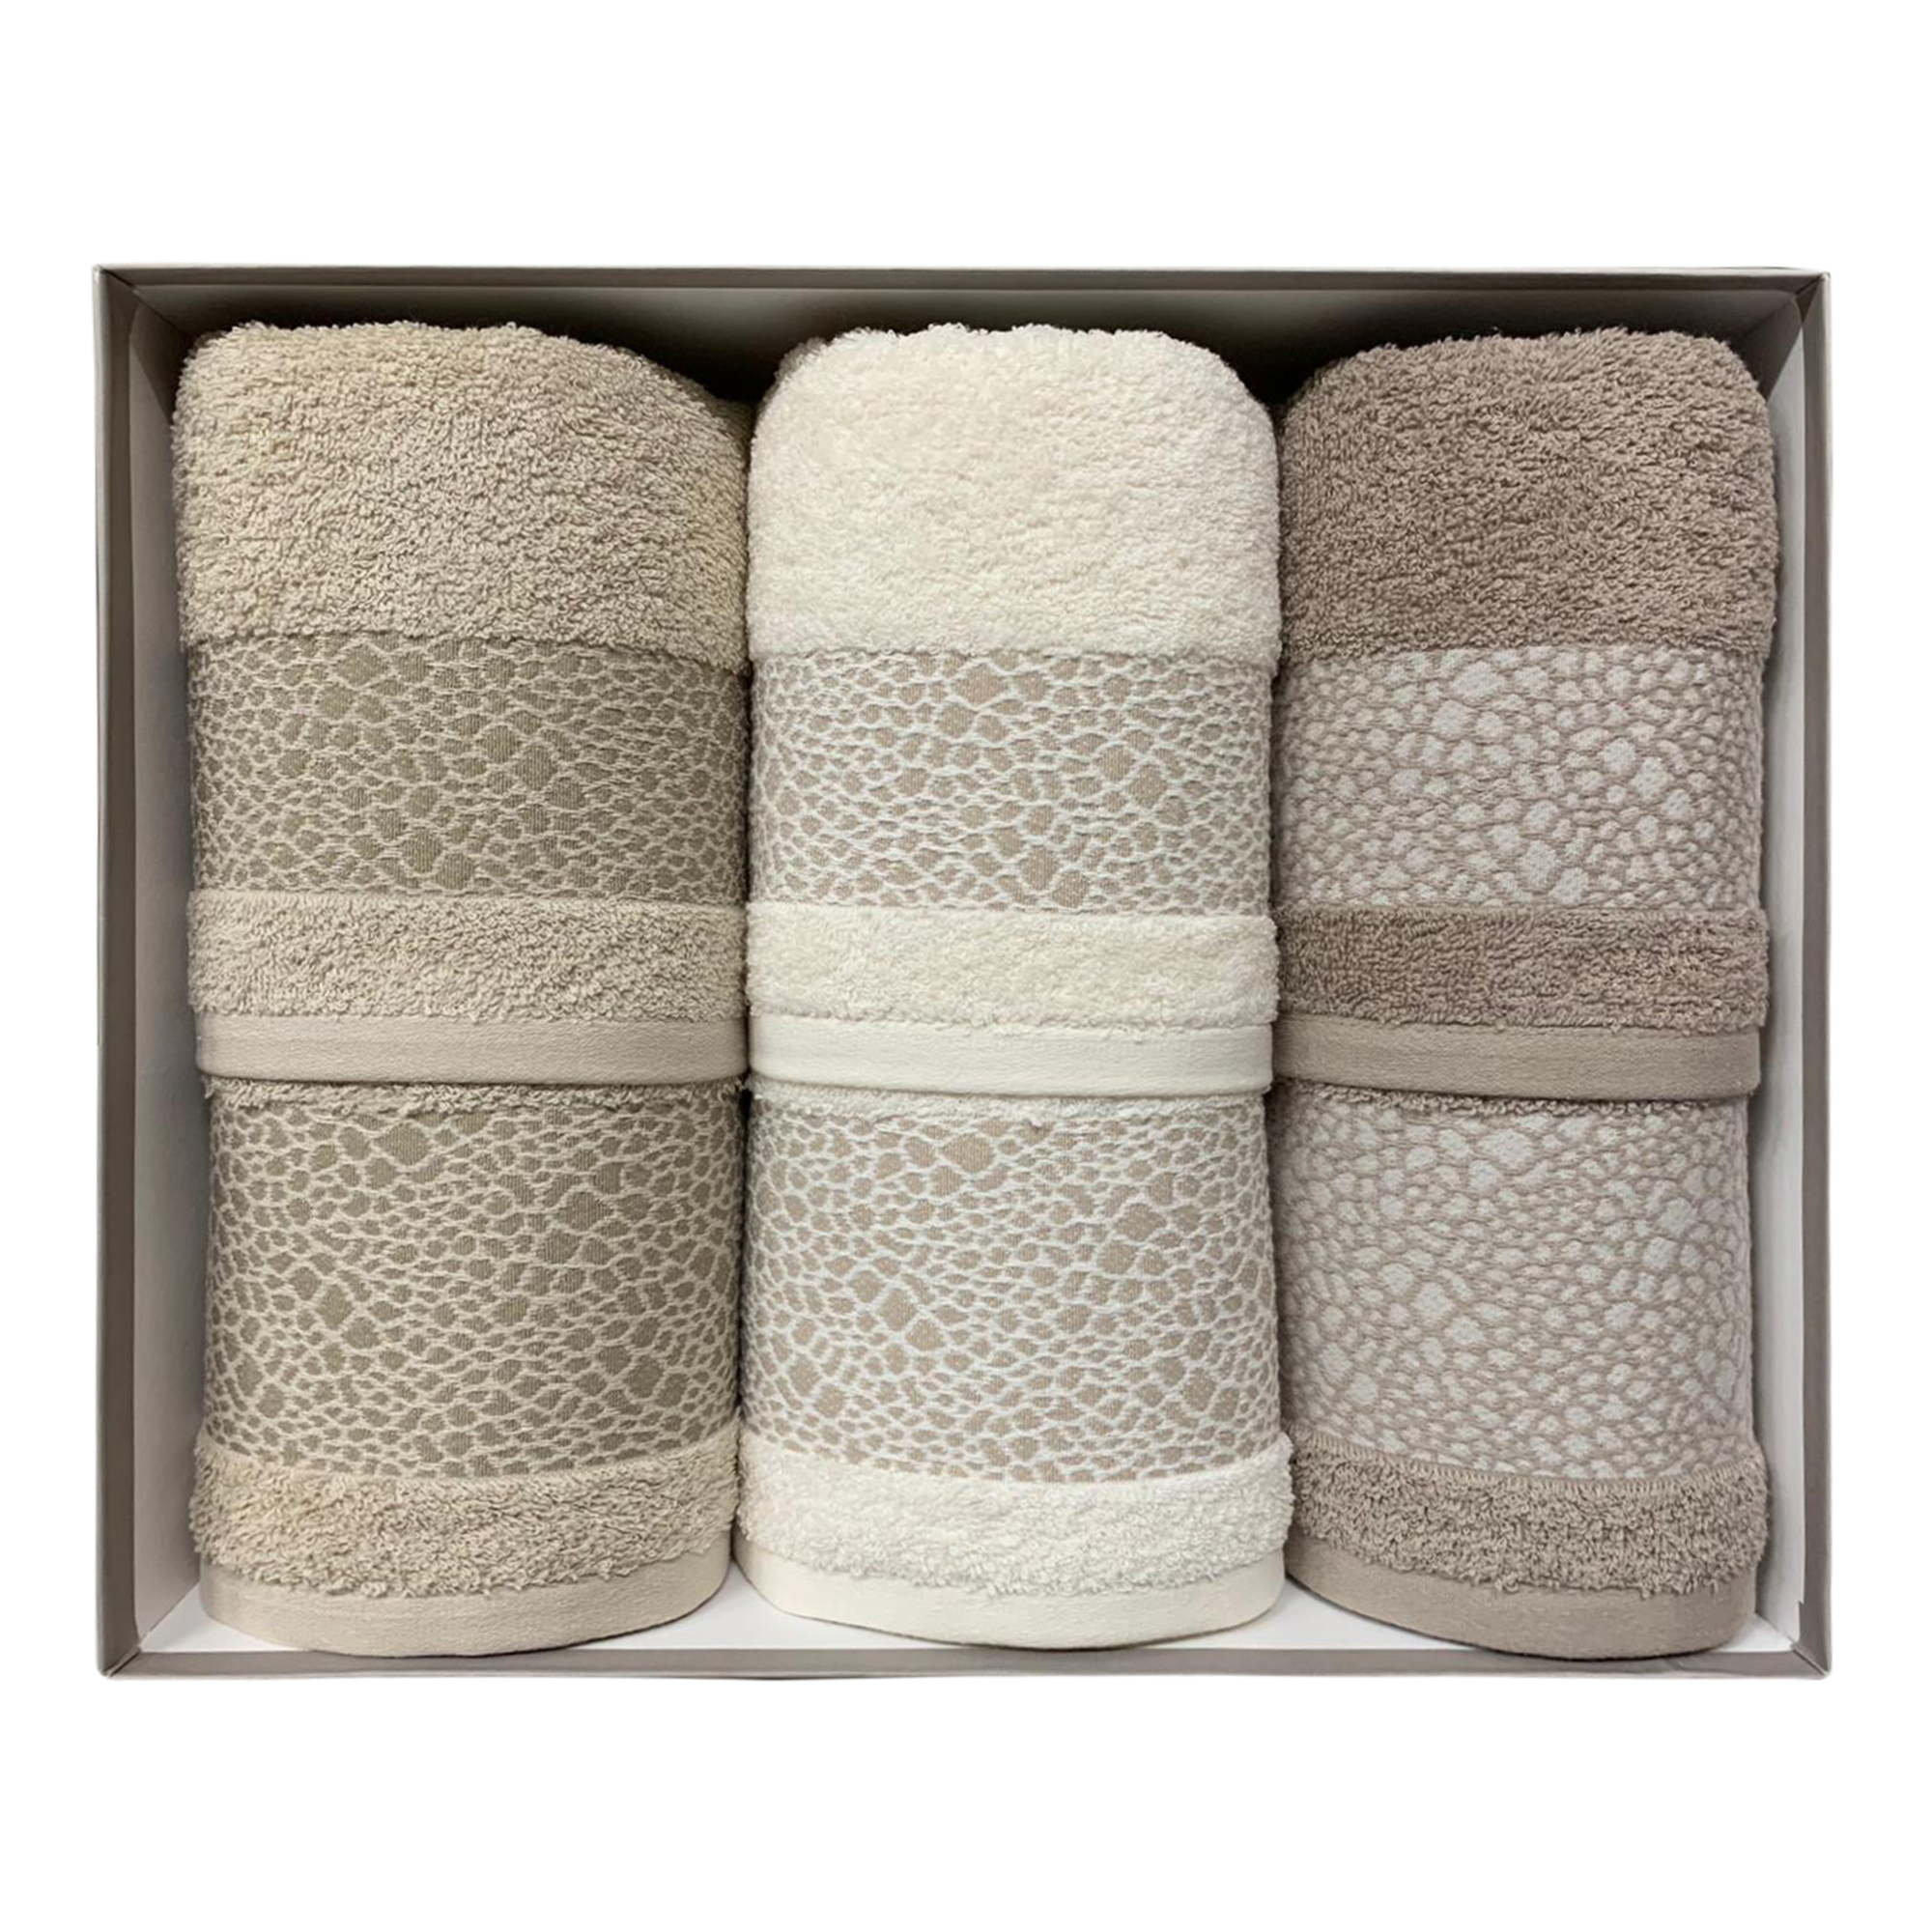 B/H Set di Asciugamani Resistenti allo sbiadimento,Set di 3 Asciugamani da Bagno in Fibra di bambù,Set di Asciugamani assorbenti Blu,Asciugamani in Cotone 100% Super Morbido e Assorbente 